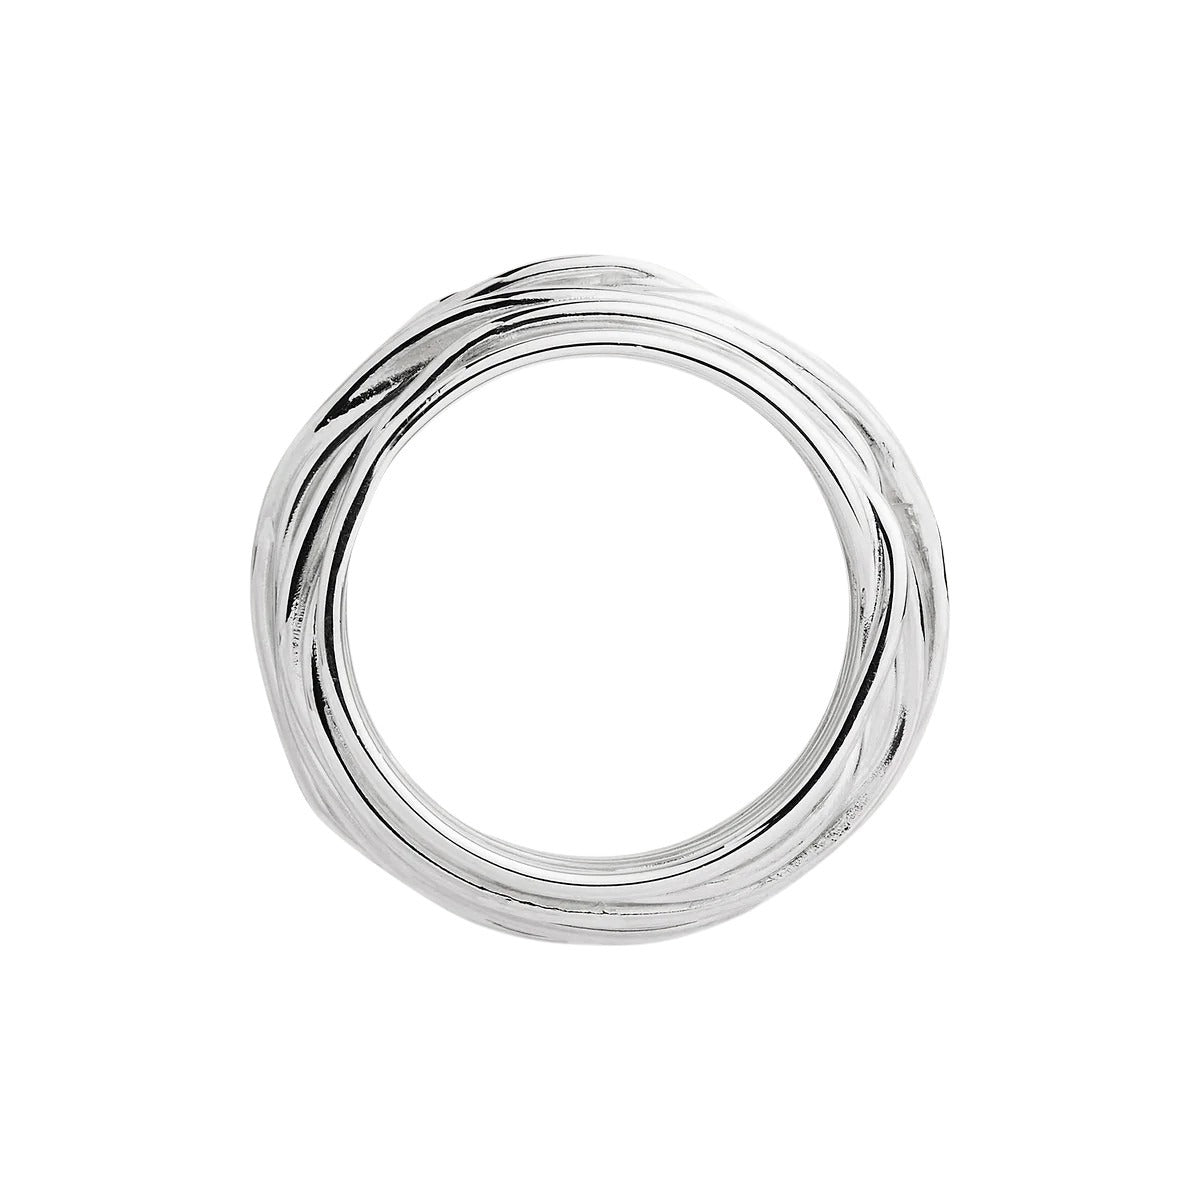 Najo R6860 Awaken Silver Ring